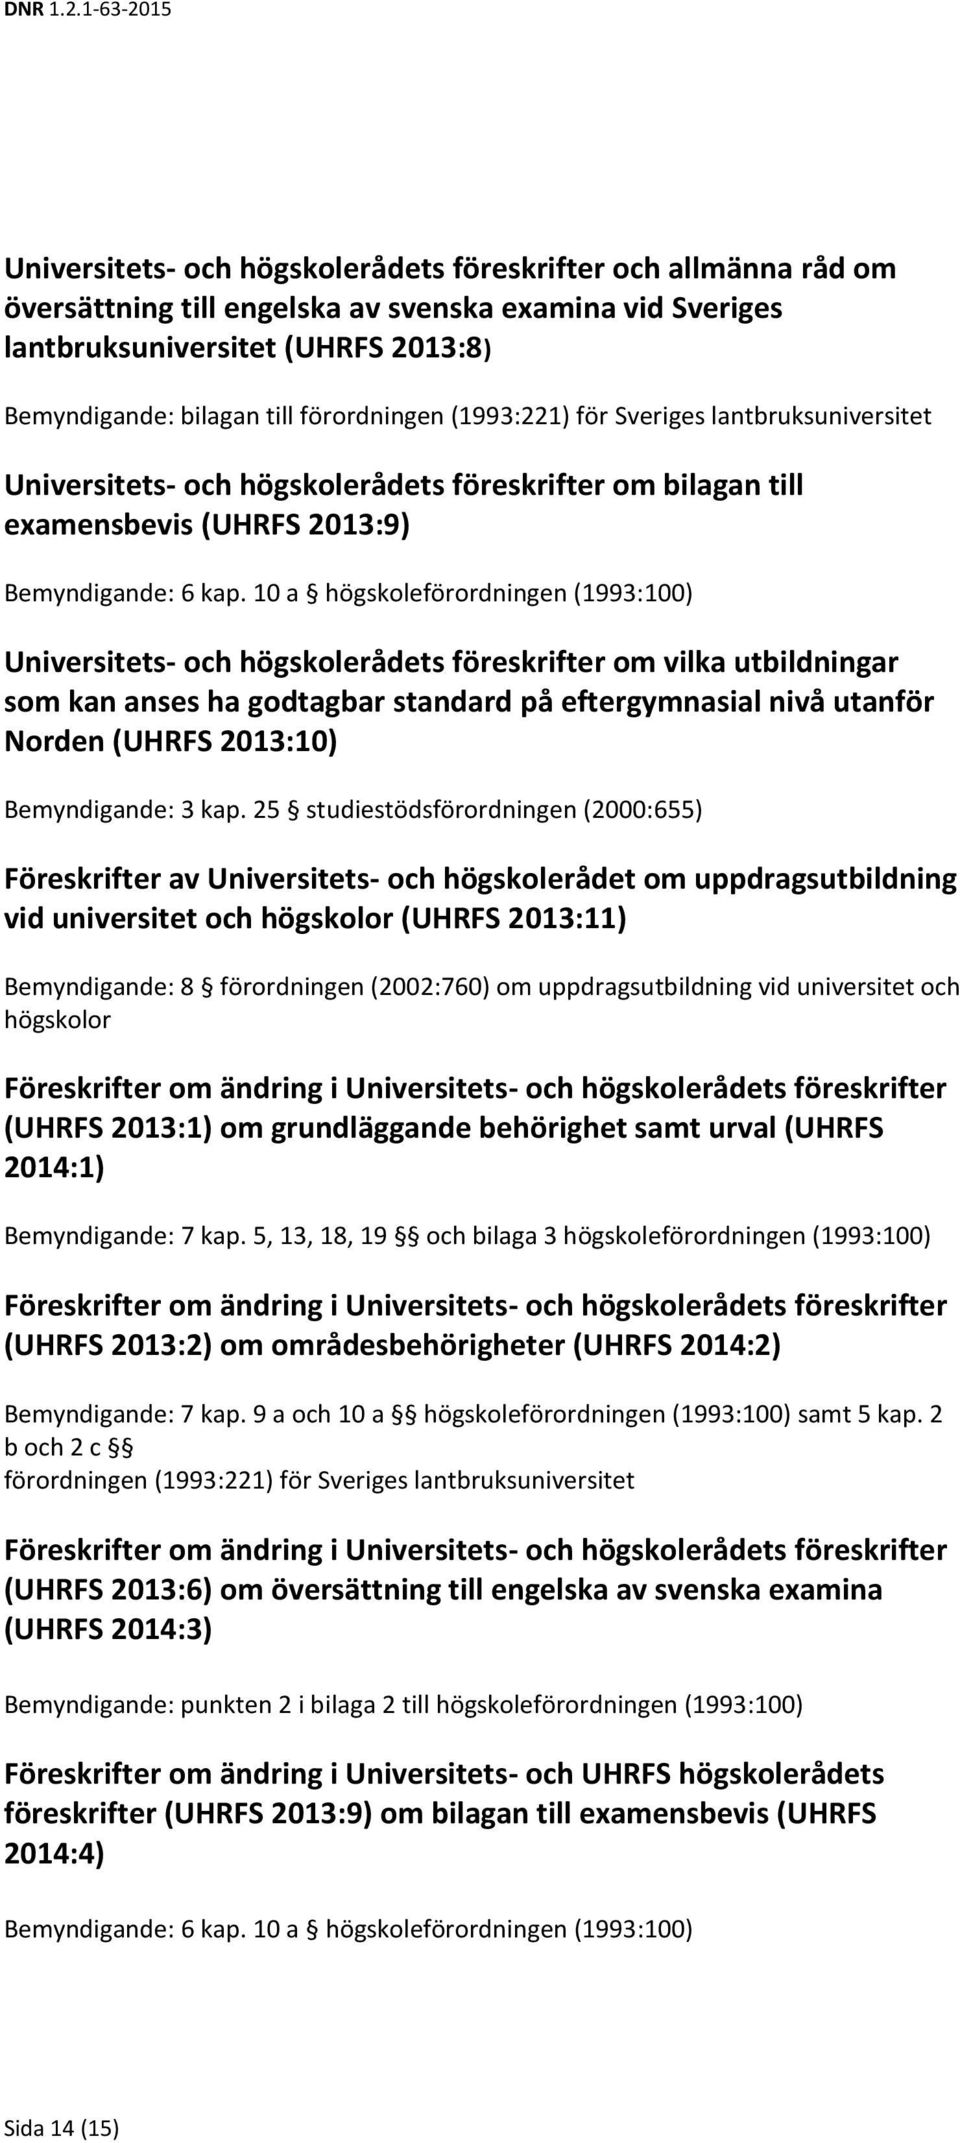 10 a högskoleförordningen (1993:100) Universitets- och högskolerådets föreskrifter om vilka utbildningar som kan anses ha godtagbar standard på eftergymnasial nivå utanför Norden (UHRFS 2013:10)